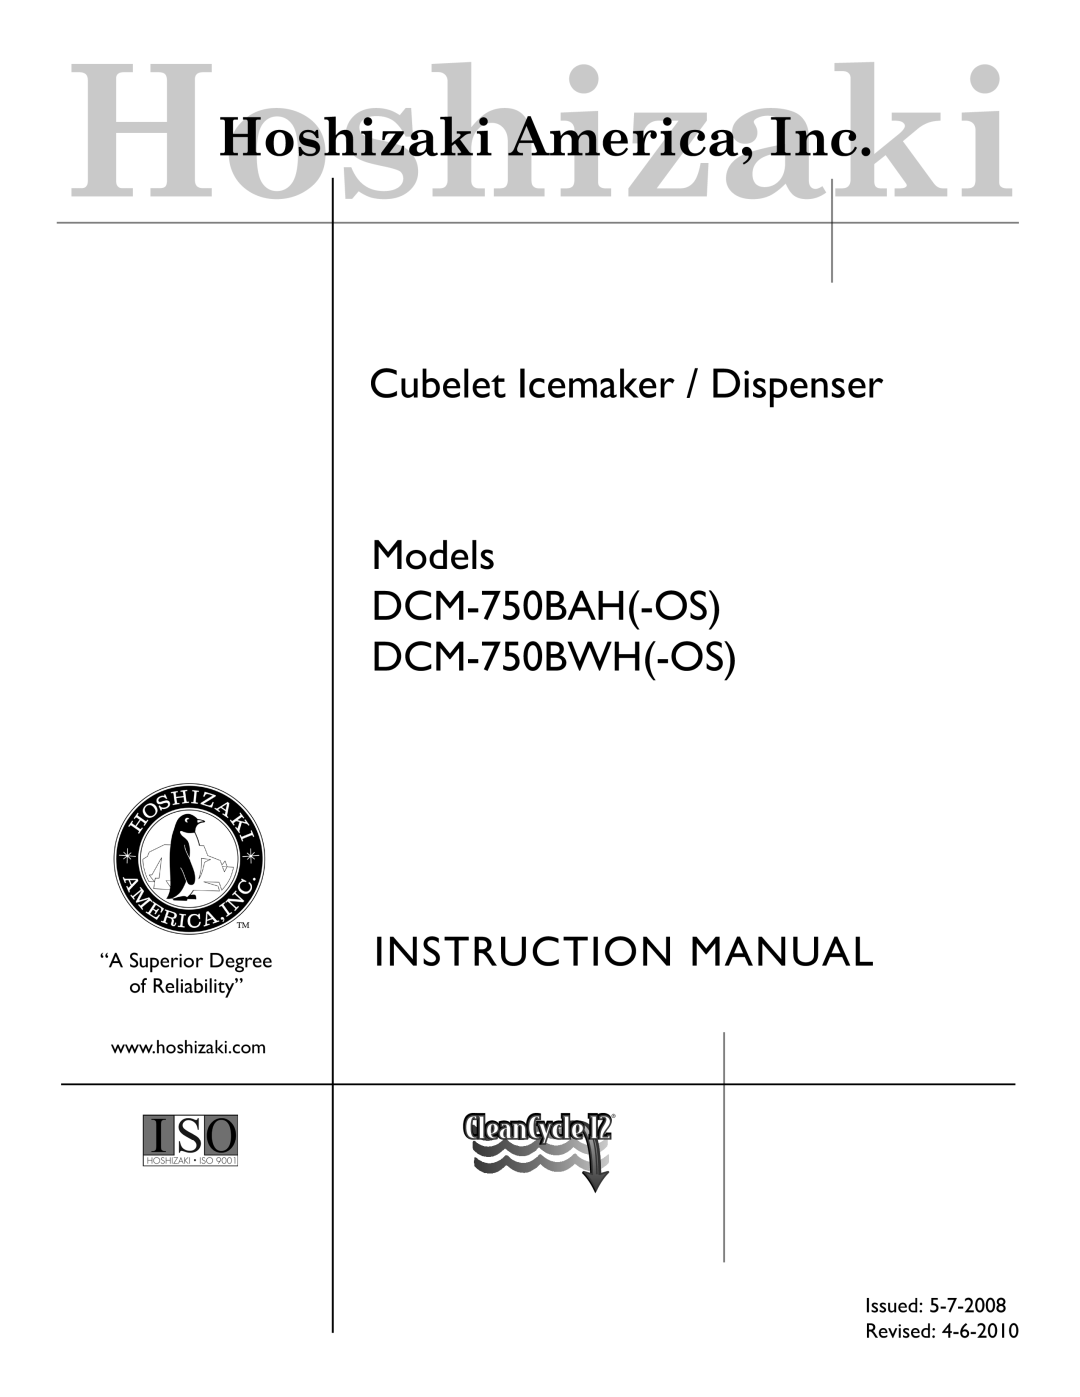 Hoshizaki DCM-750BAH(-OS), DCM-750BWH(-OS) instruction manual Cubelet Icemaker / Dispenser Models DCM-750BAH-OS 